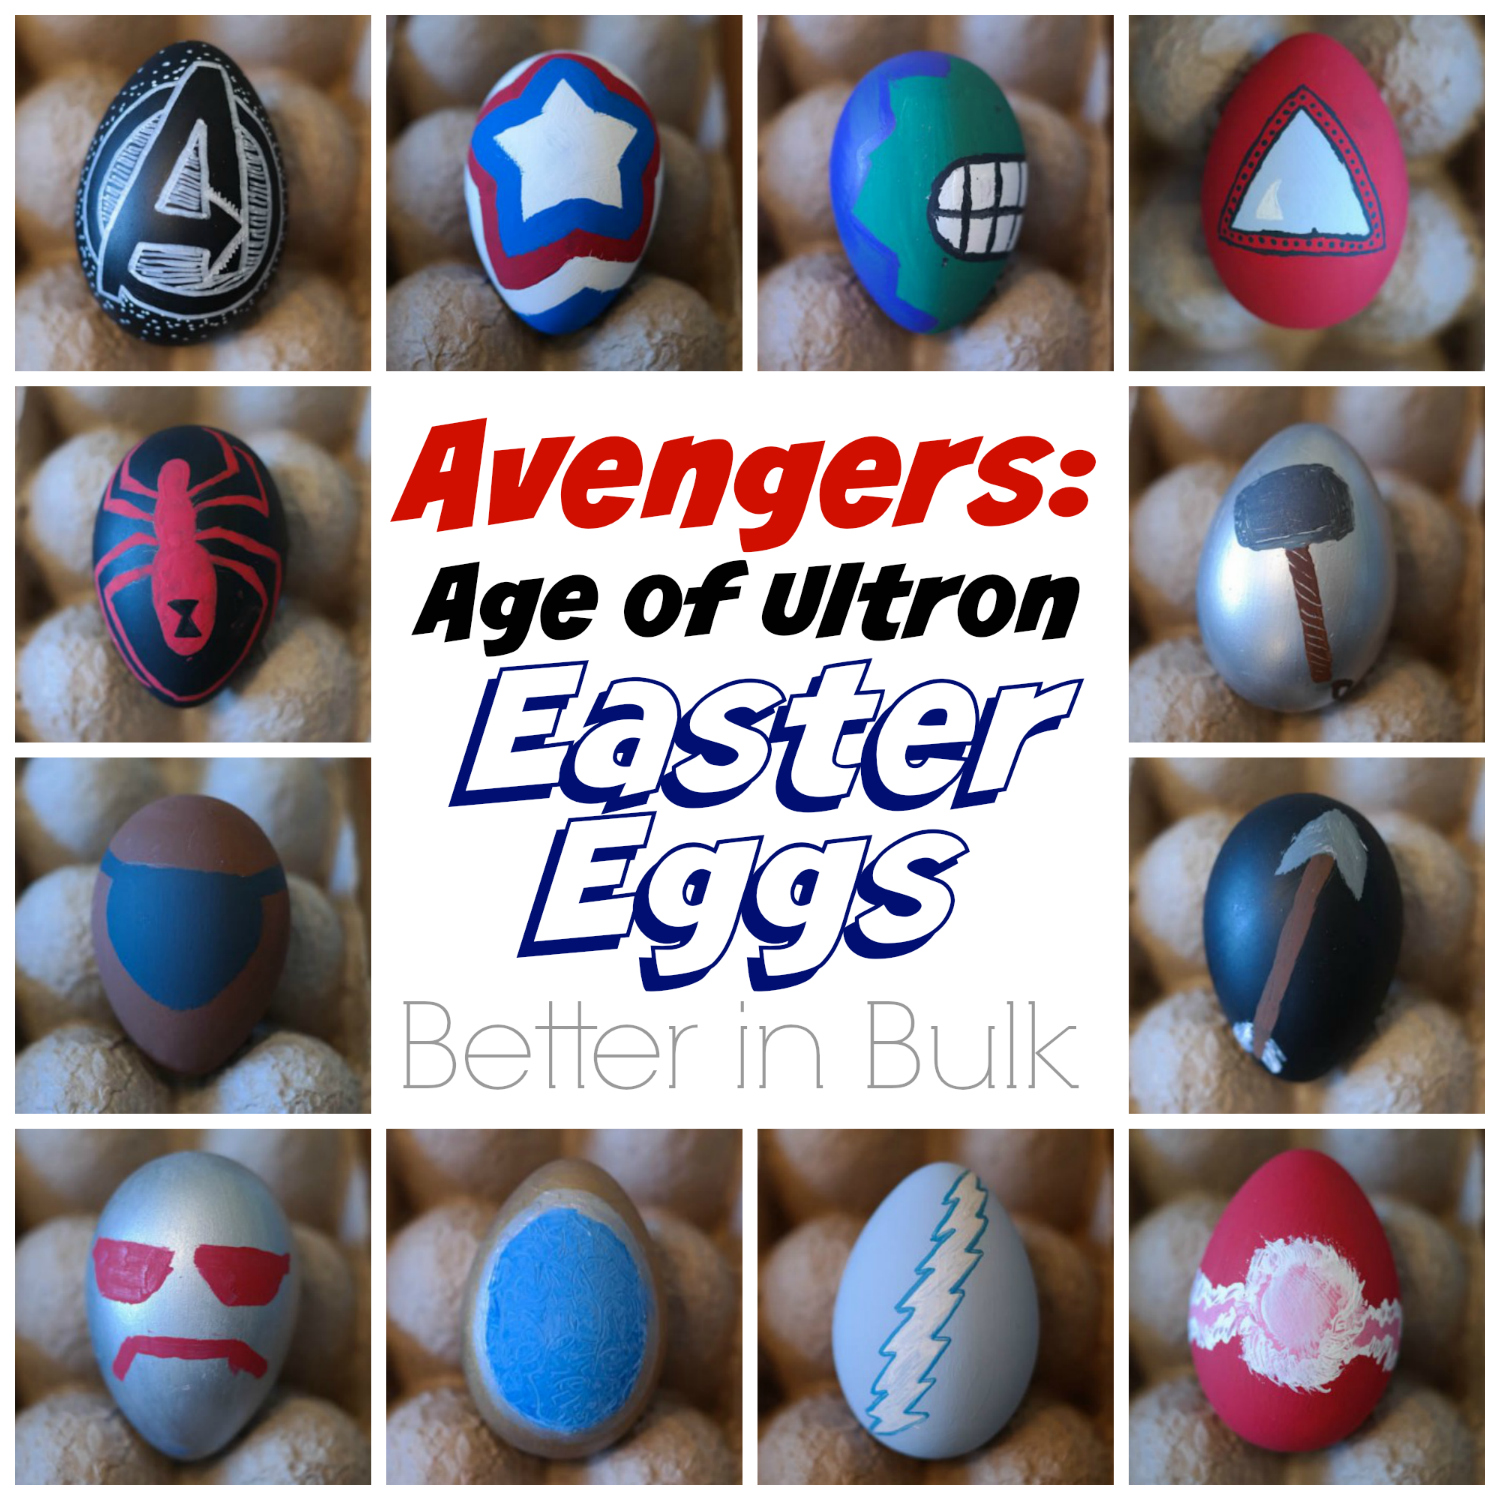 Avengers Easter Eggs